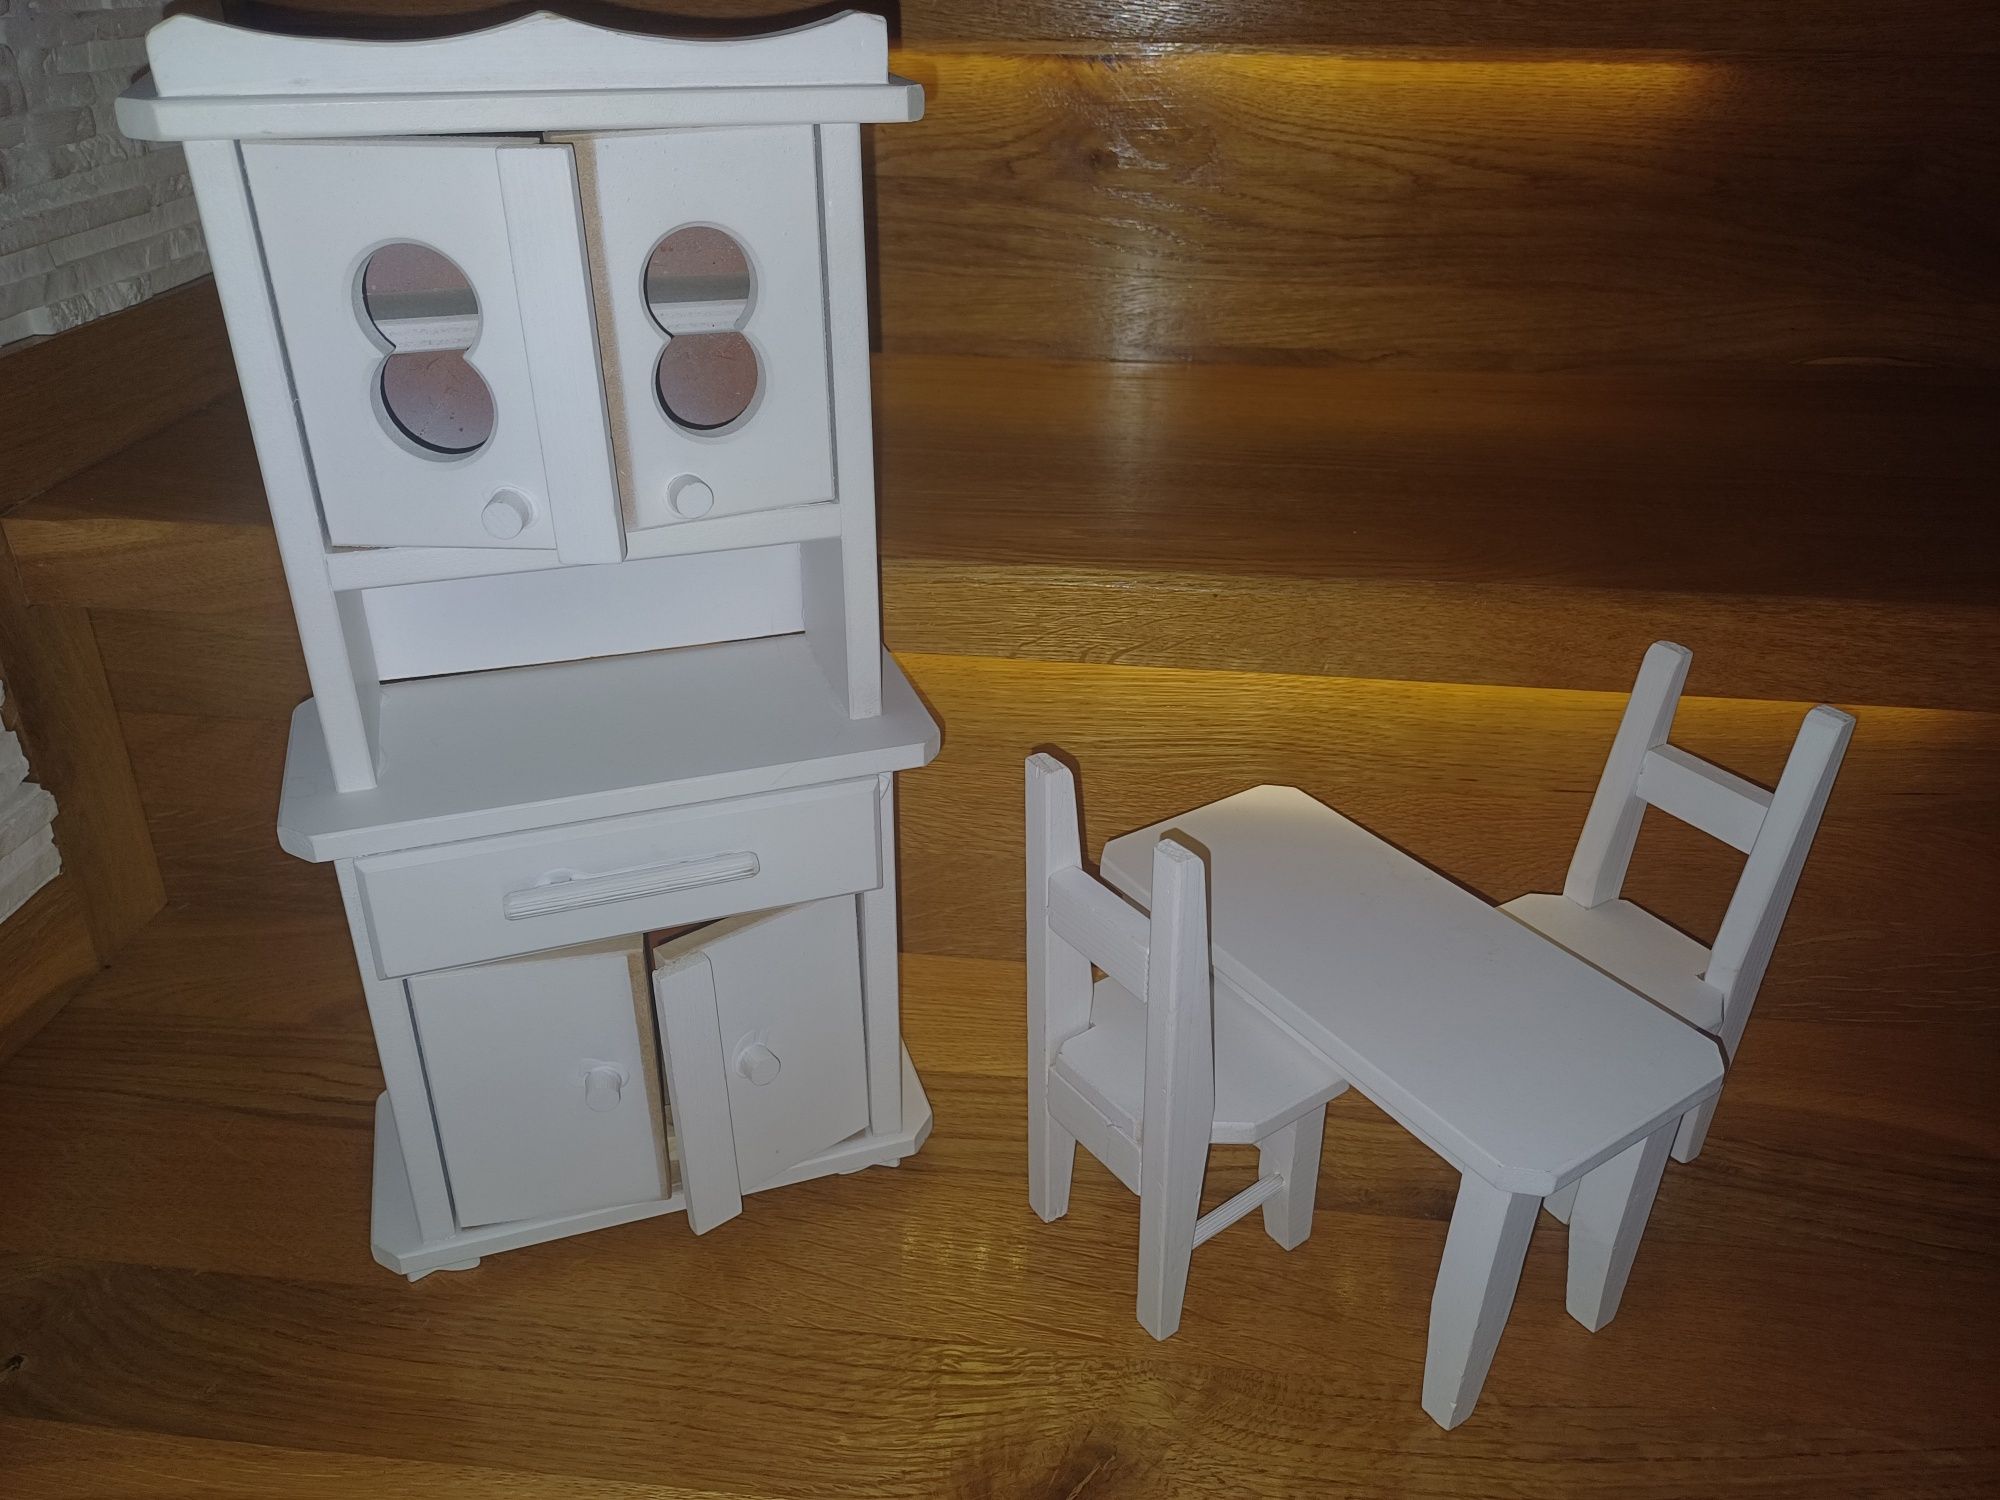 Dla lalek drewniany kredens, stół i 2 krzesła